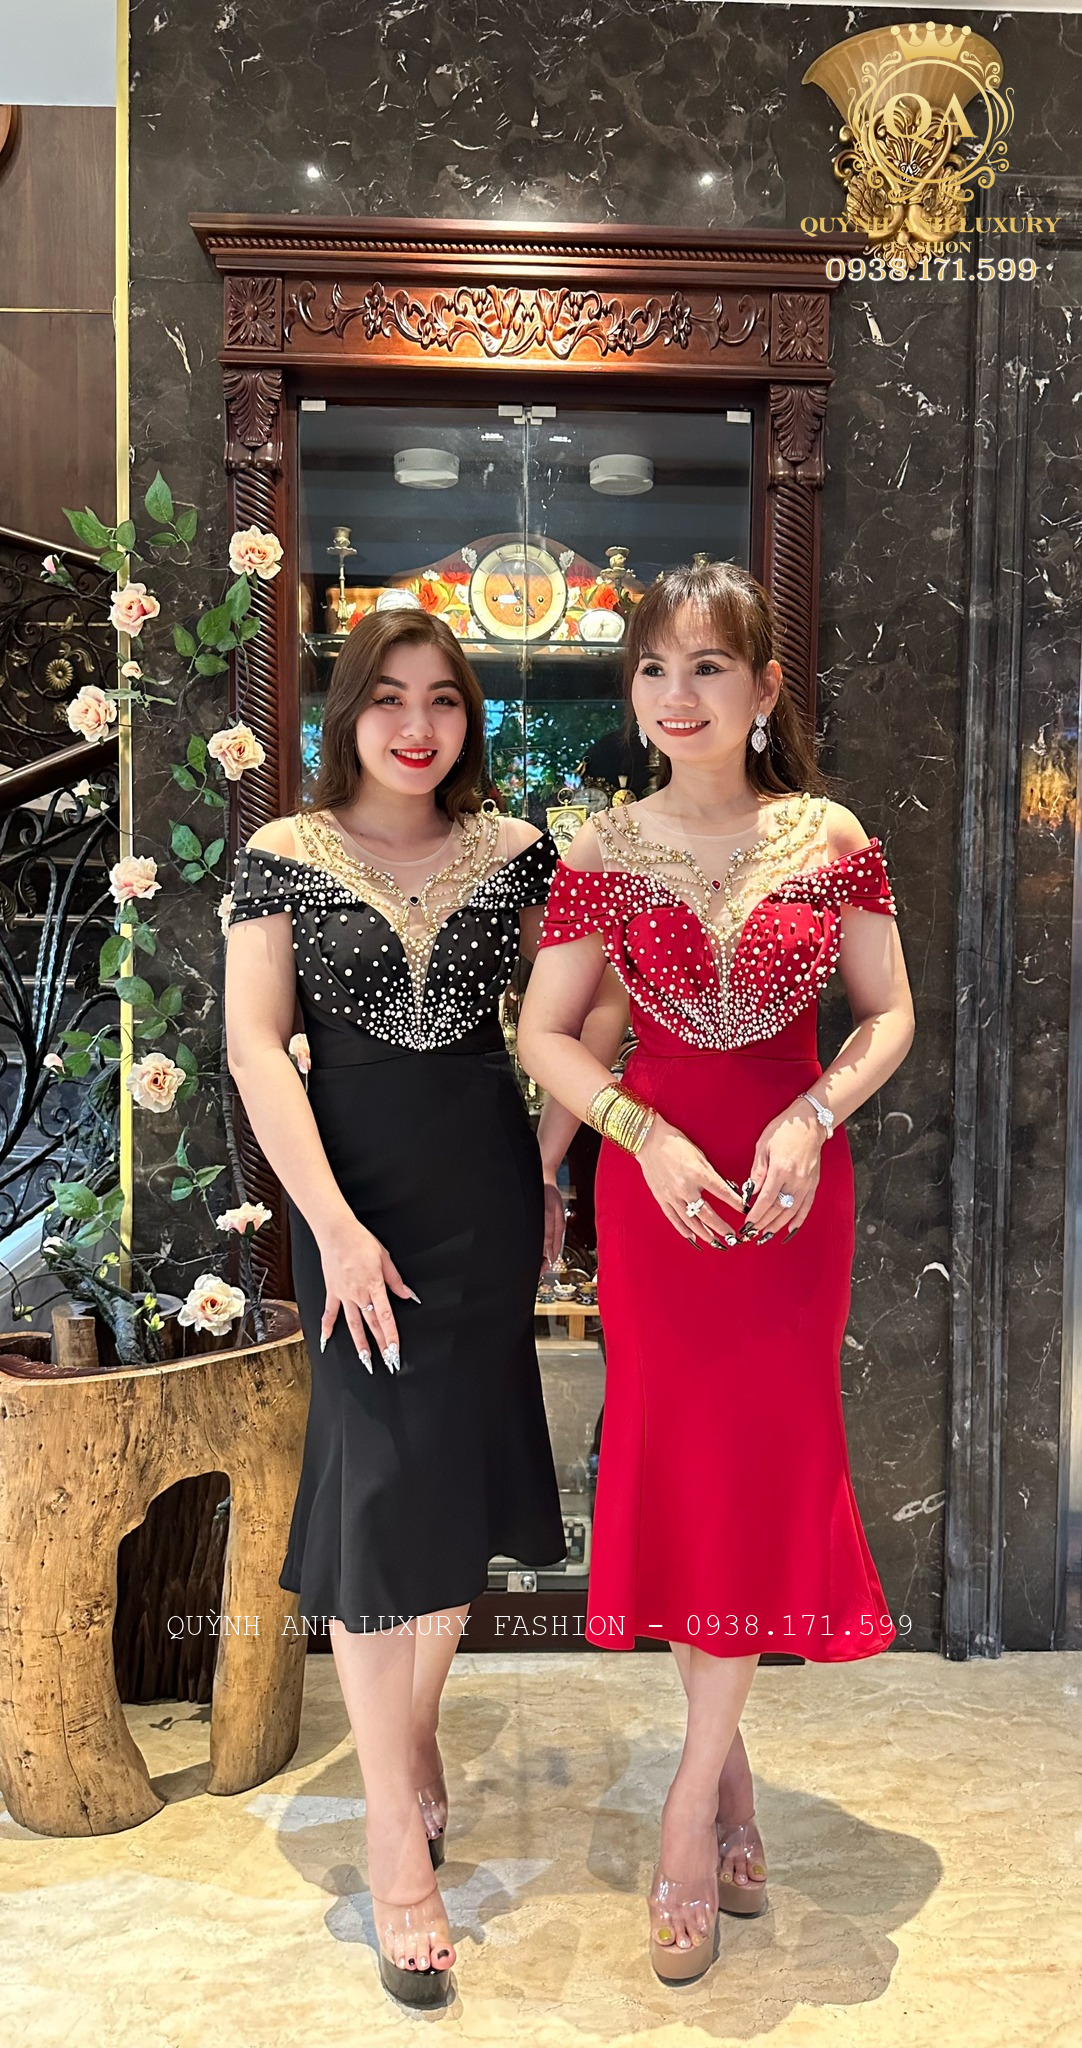 Đầm dạ hội cho bà sui của Quỳnh Anh Luxury Fashion